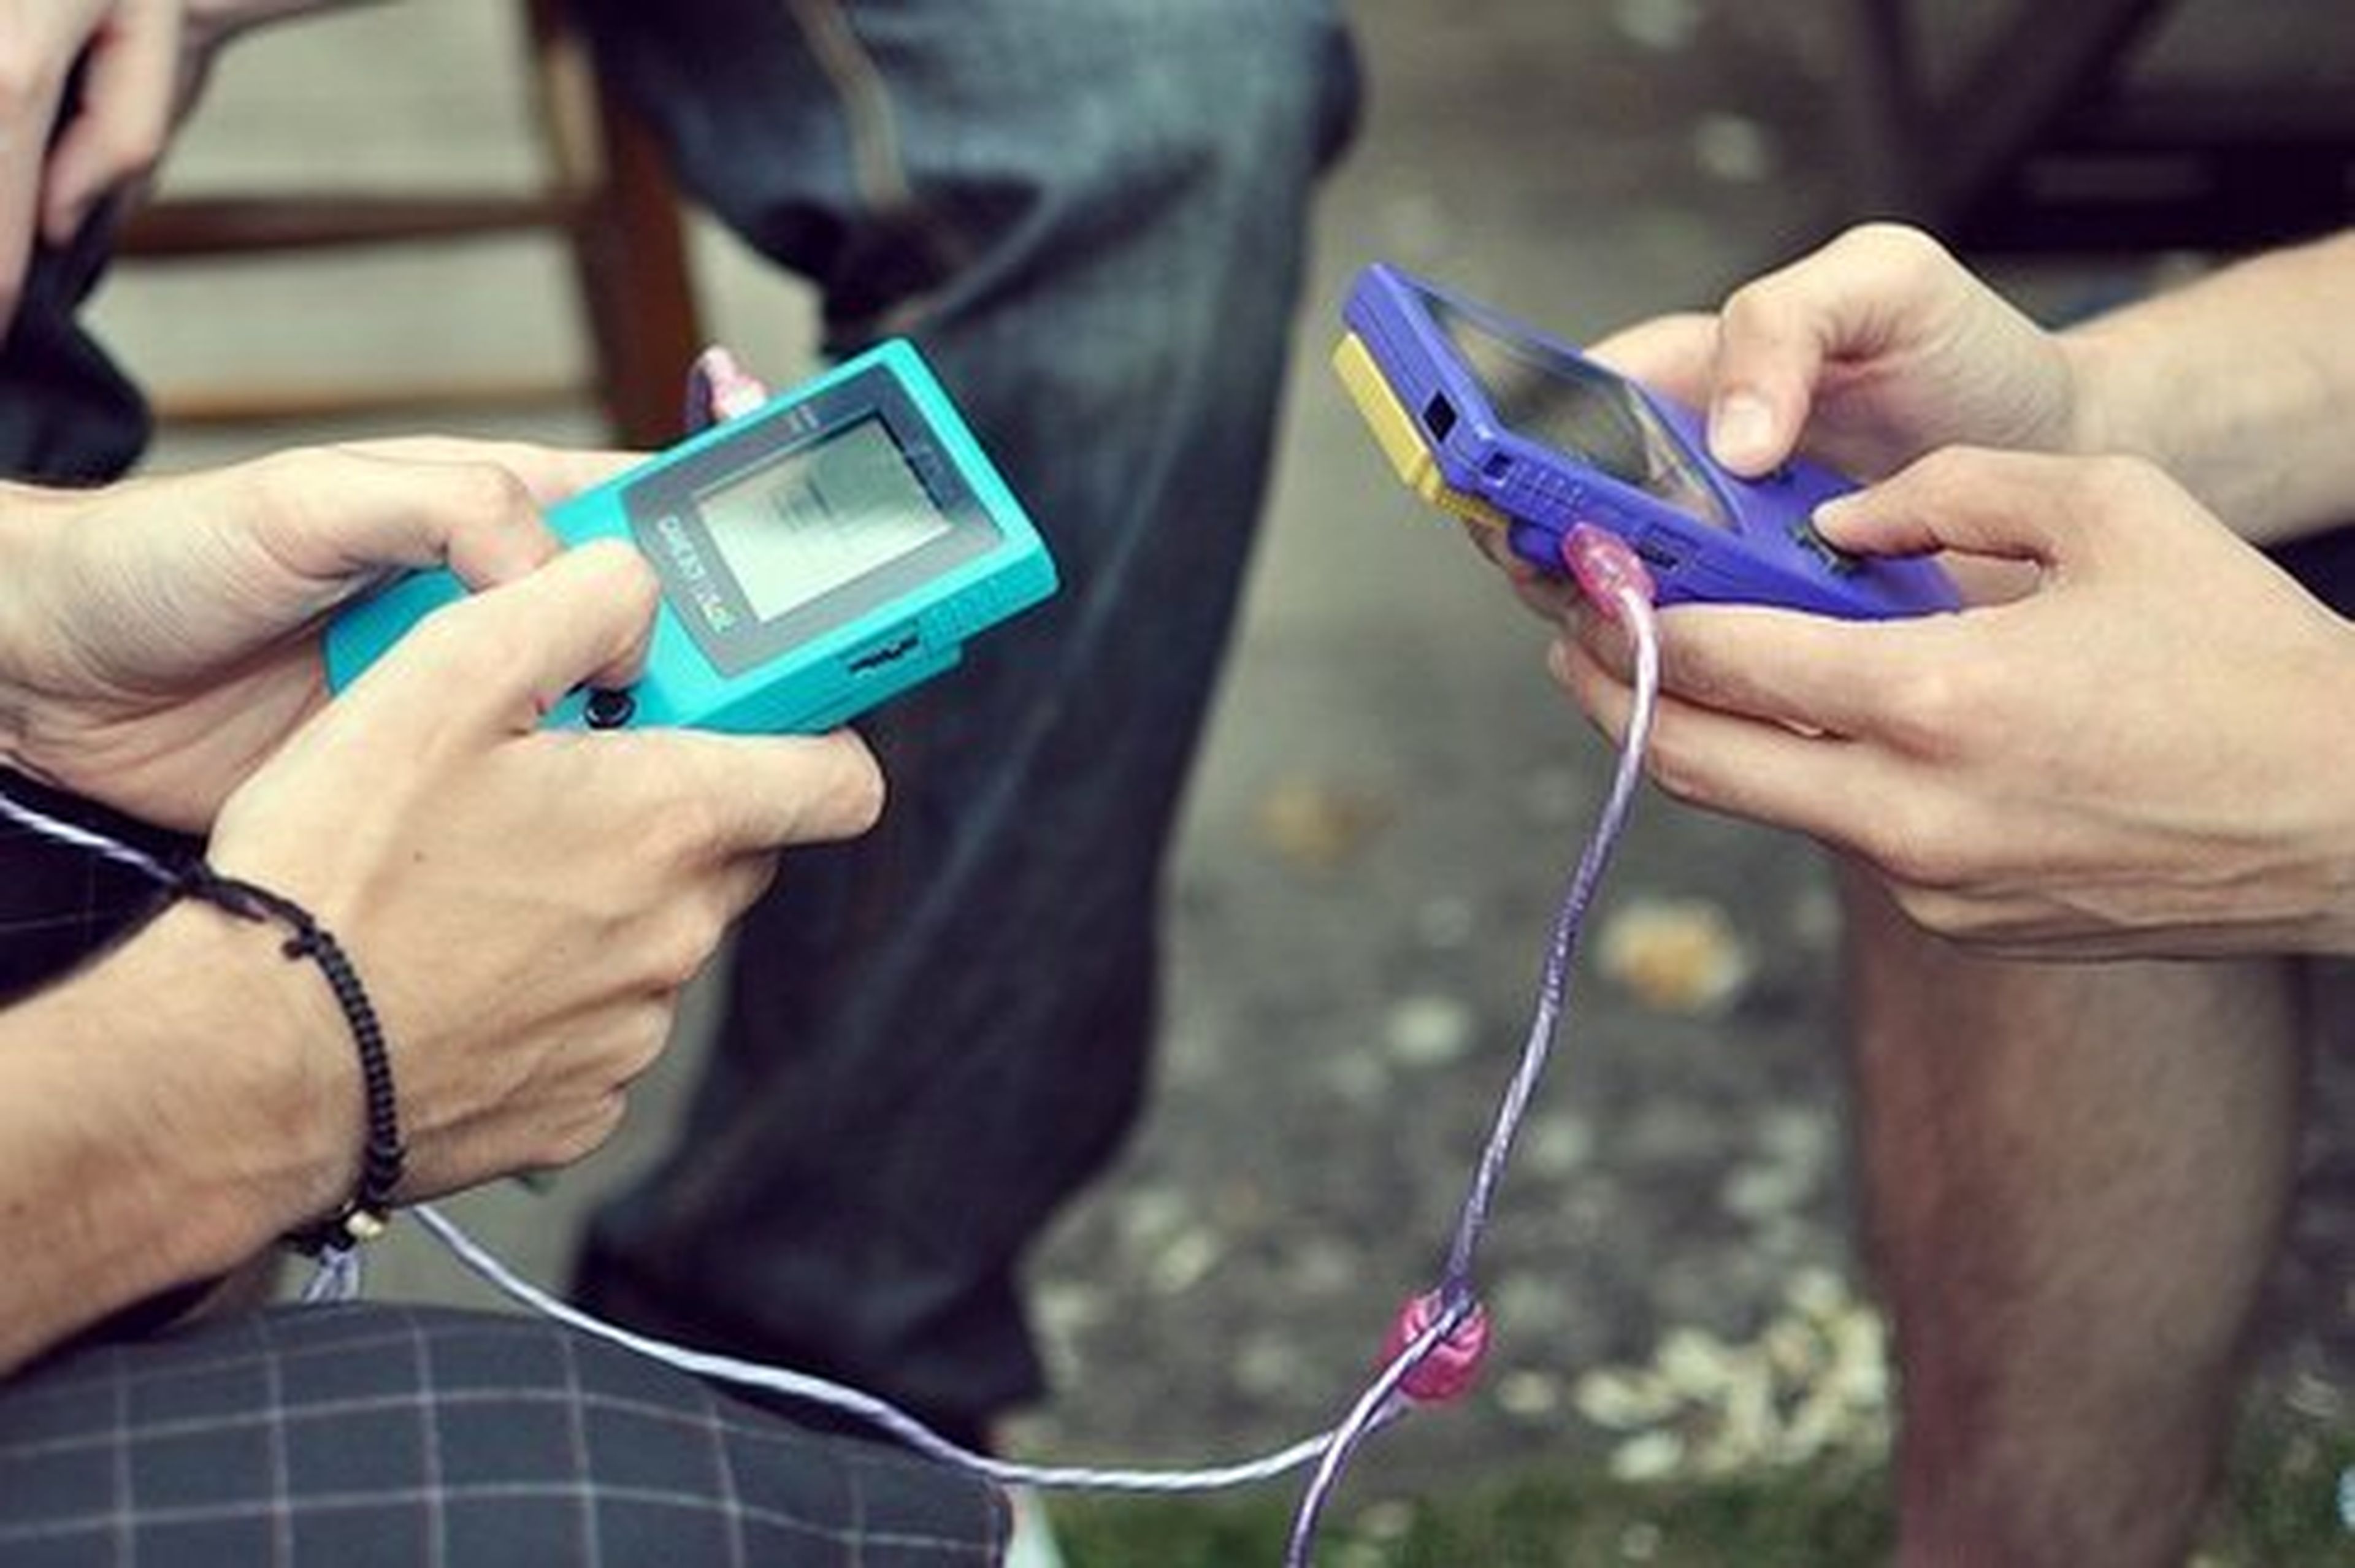 Nintendo Game Boy cumple 25 años